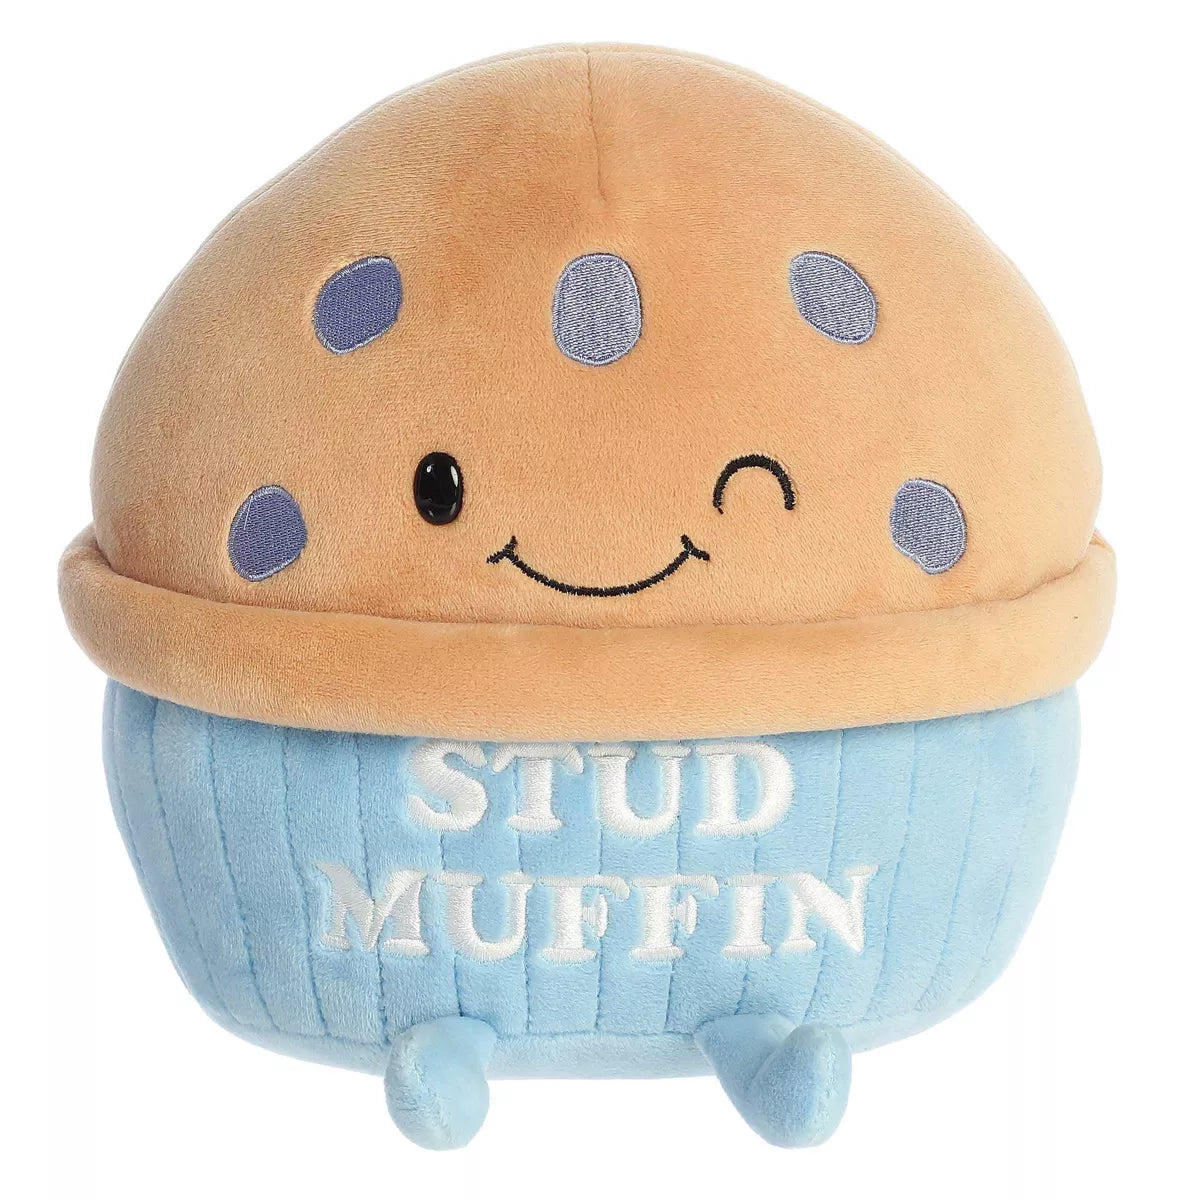 8.5" Stud Muffin